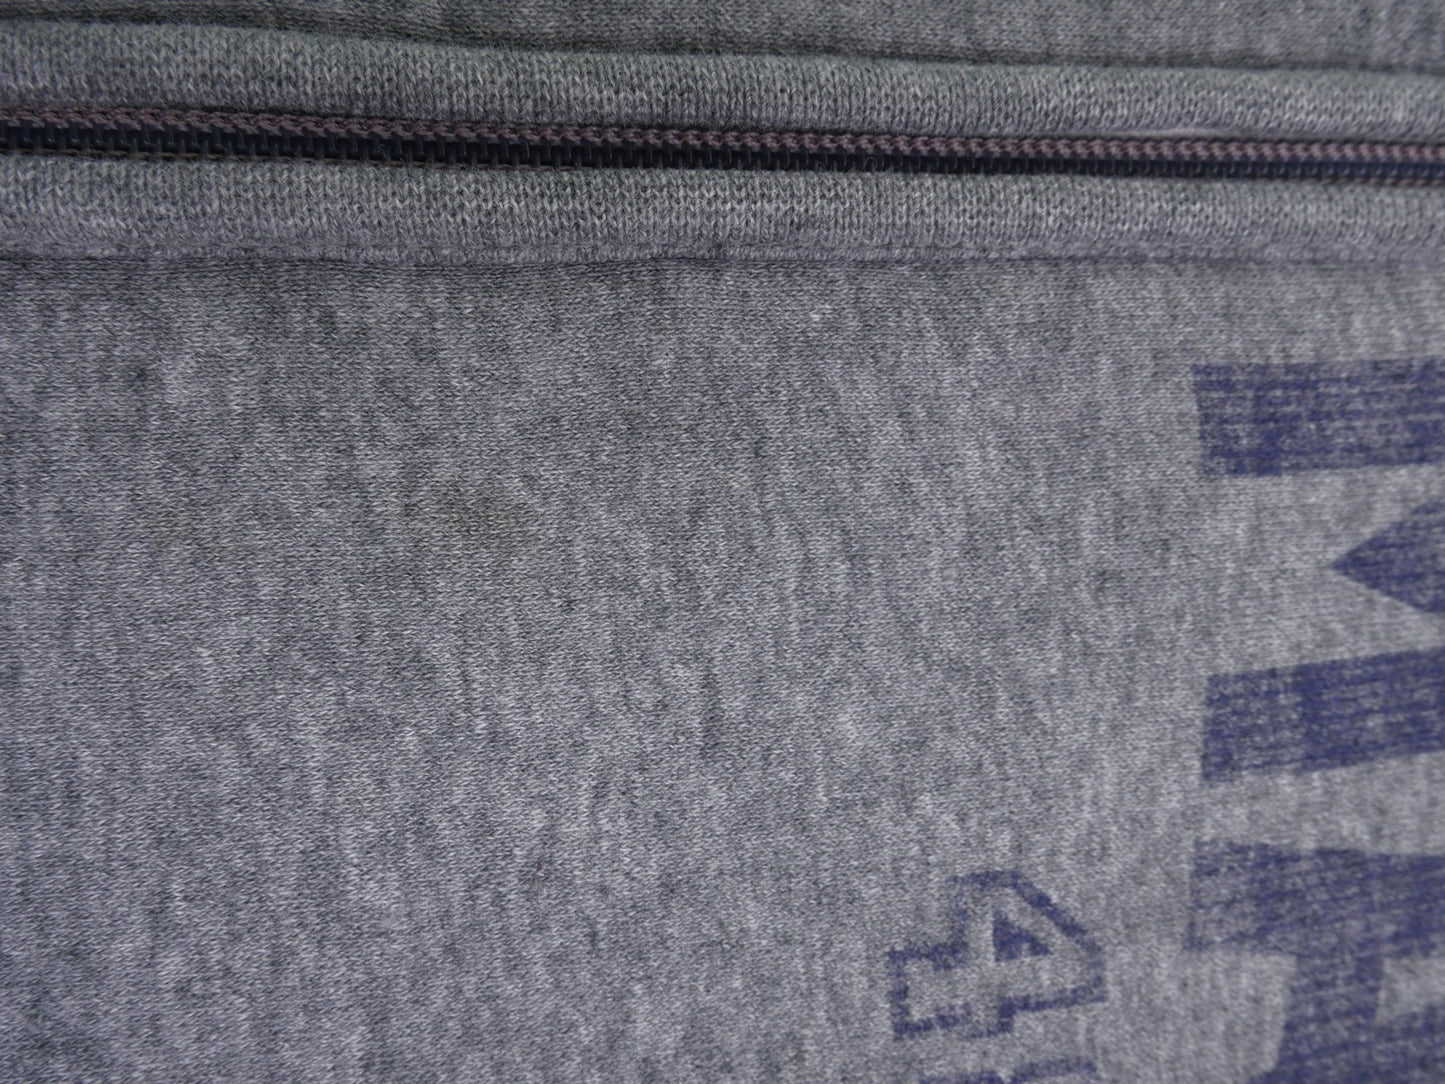 puma printed Spellout grey Zip Hoodie - Peeces